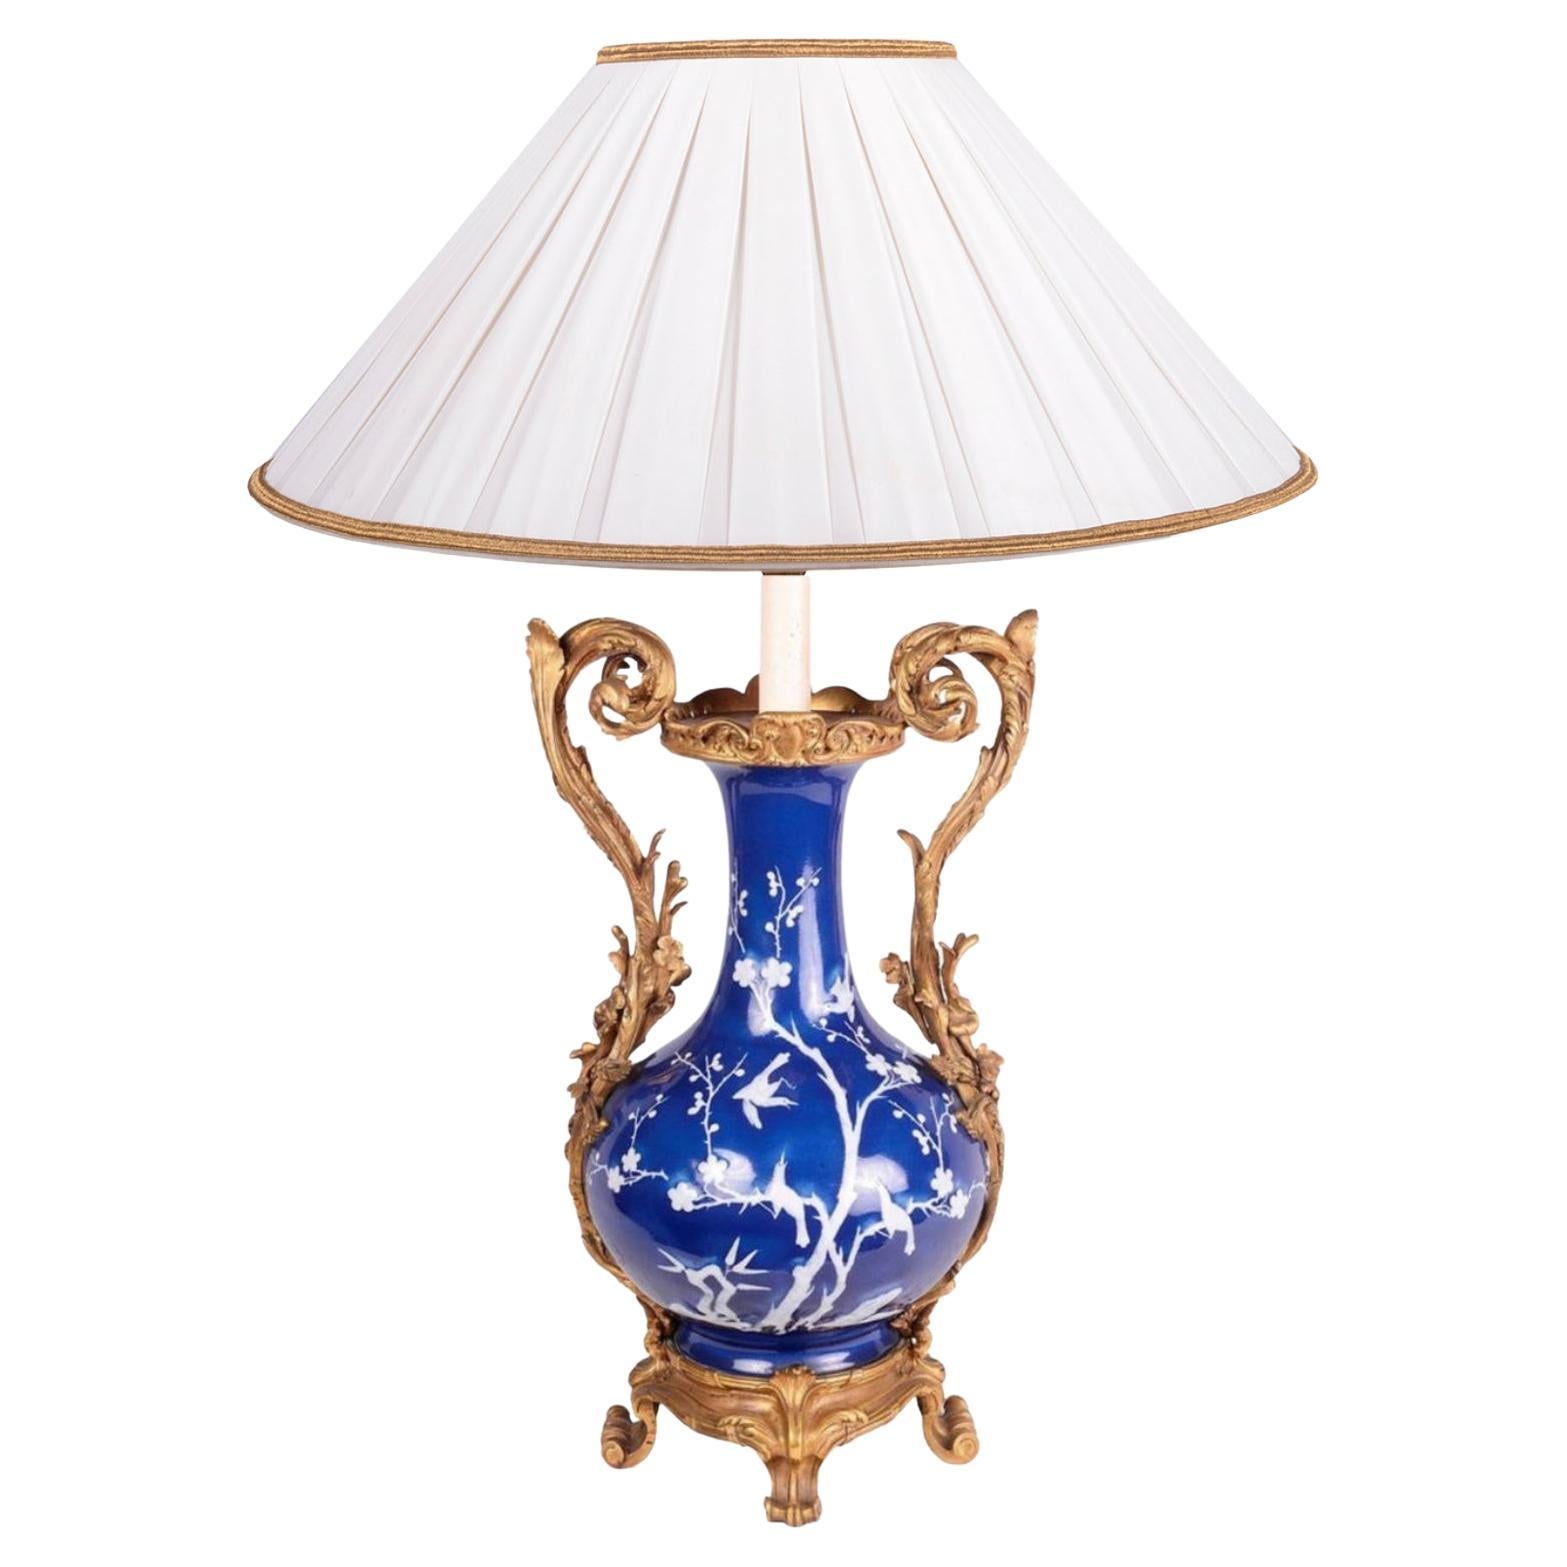 Chinesische blau-weiße Vasenlampe, 19. Jahrhundert